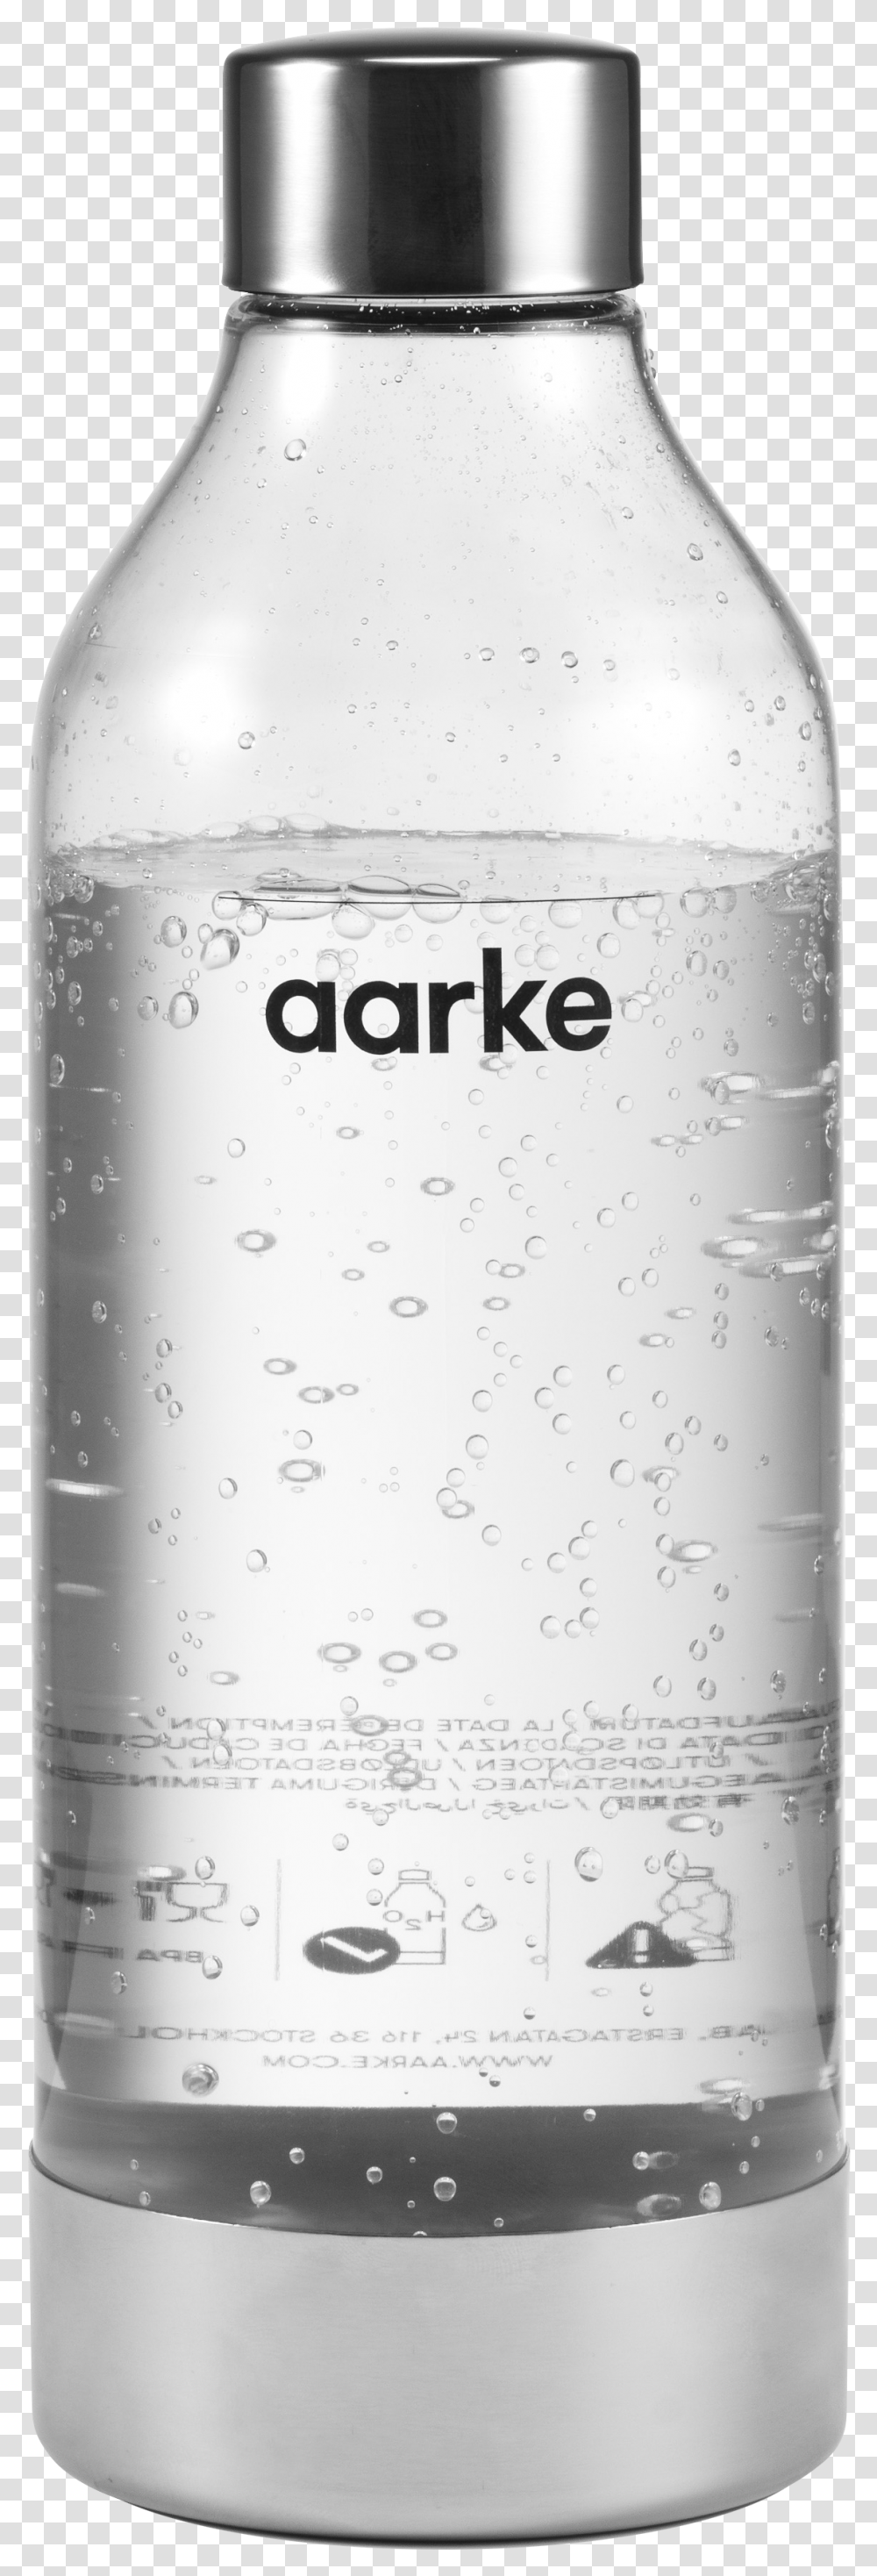 Aarke Bottle, Milk, Beverage, Drink, Shaker Transparent Png